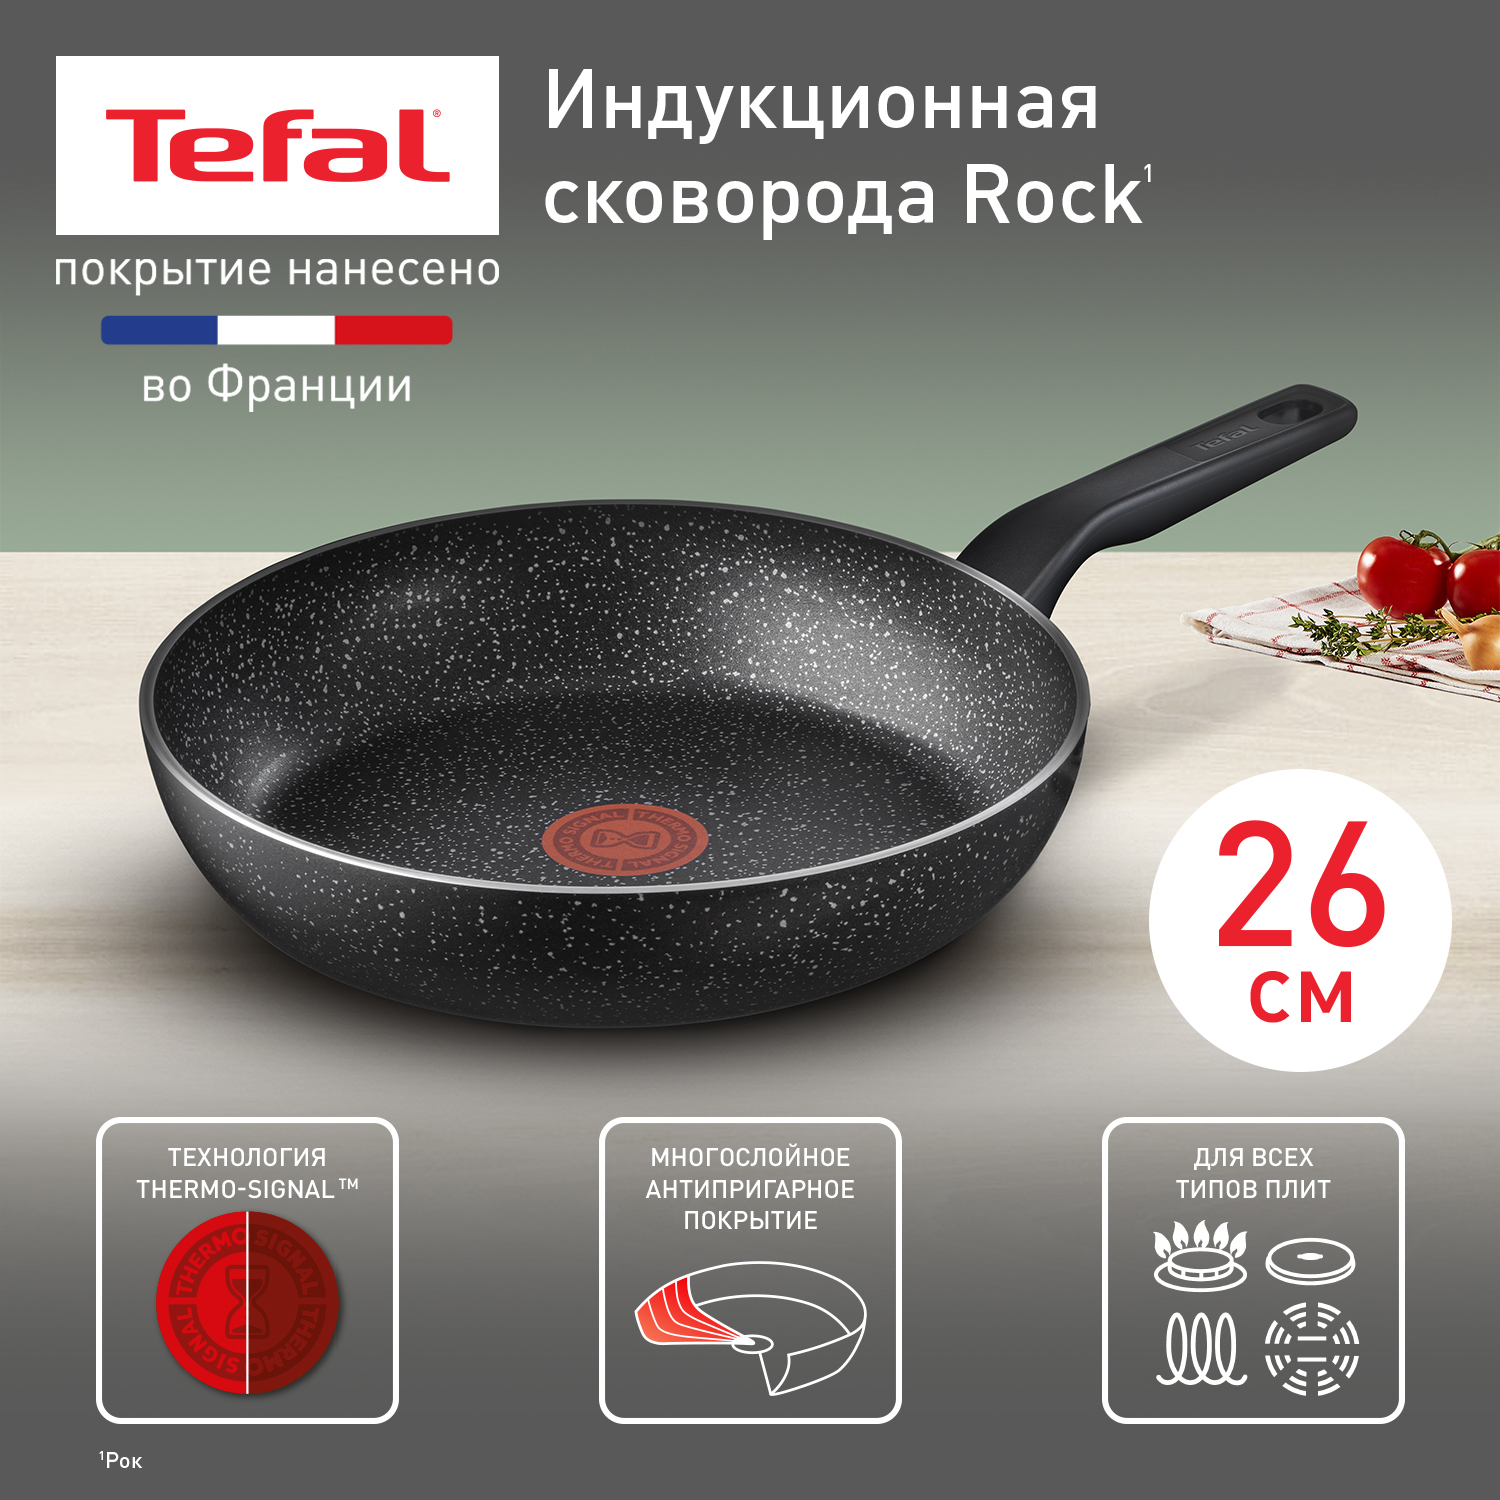 Сковорода Tefal Rock 26 cм 04225126 - купить в Официальный магазин Tefal Шарапово (со склада МегаМаркет), цена на Мегамаркет